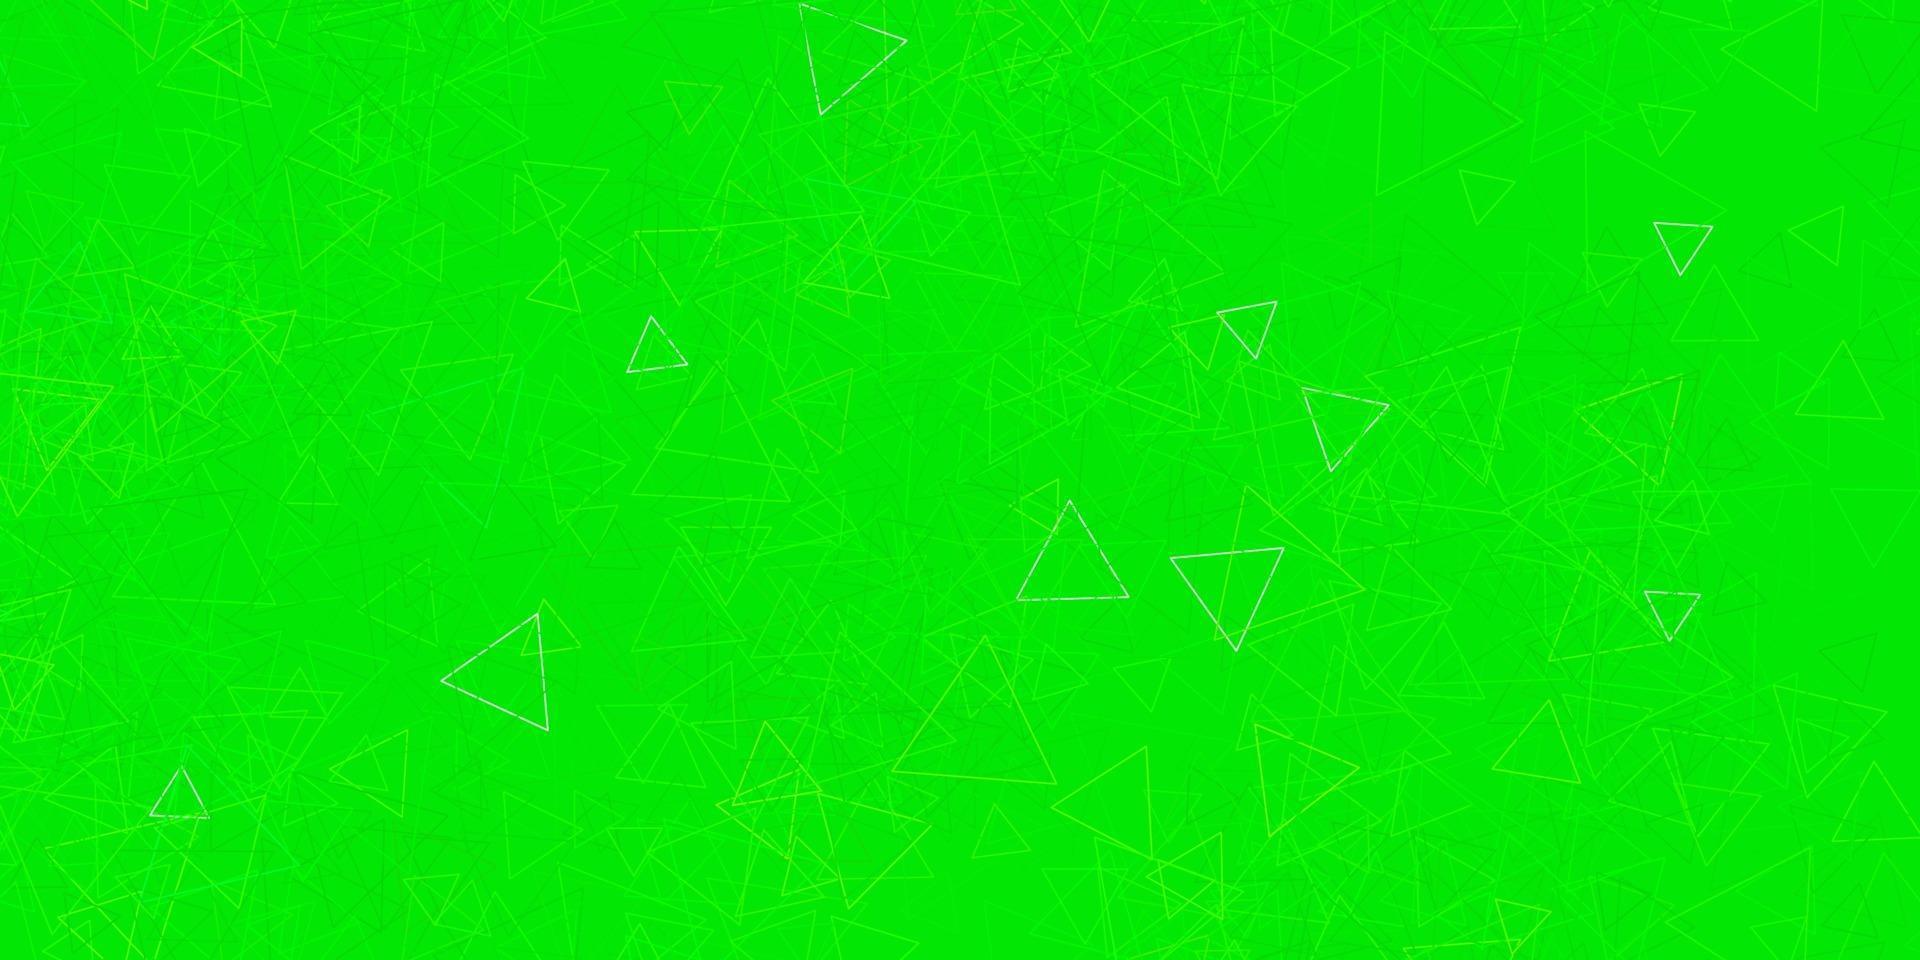 mise en page de vecteur vert foncé avec des formes triangulaires.